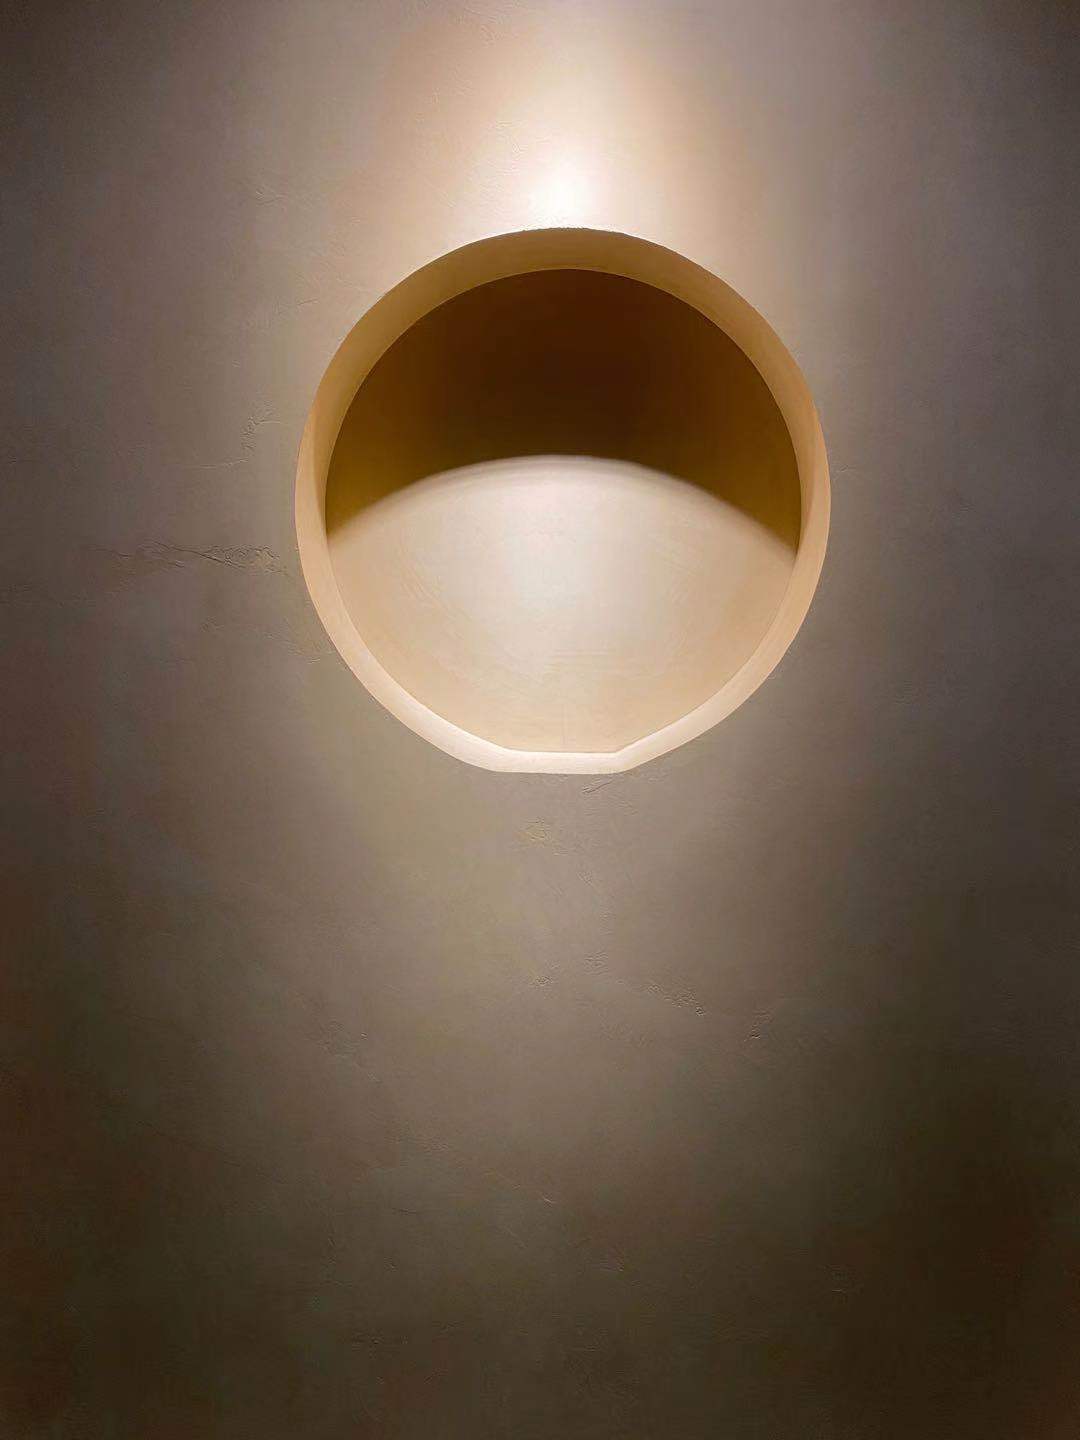 Mikrosementti minimalistisen tyylin kodin seinällä, jossa valaistus korostaa pinnoitusta